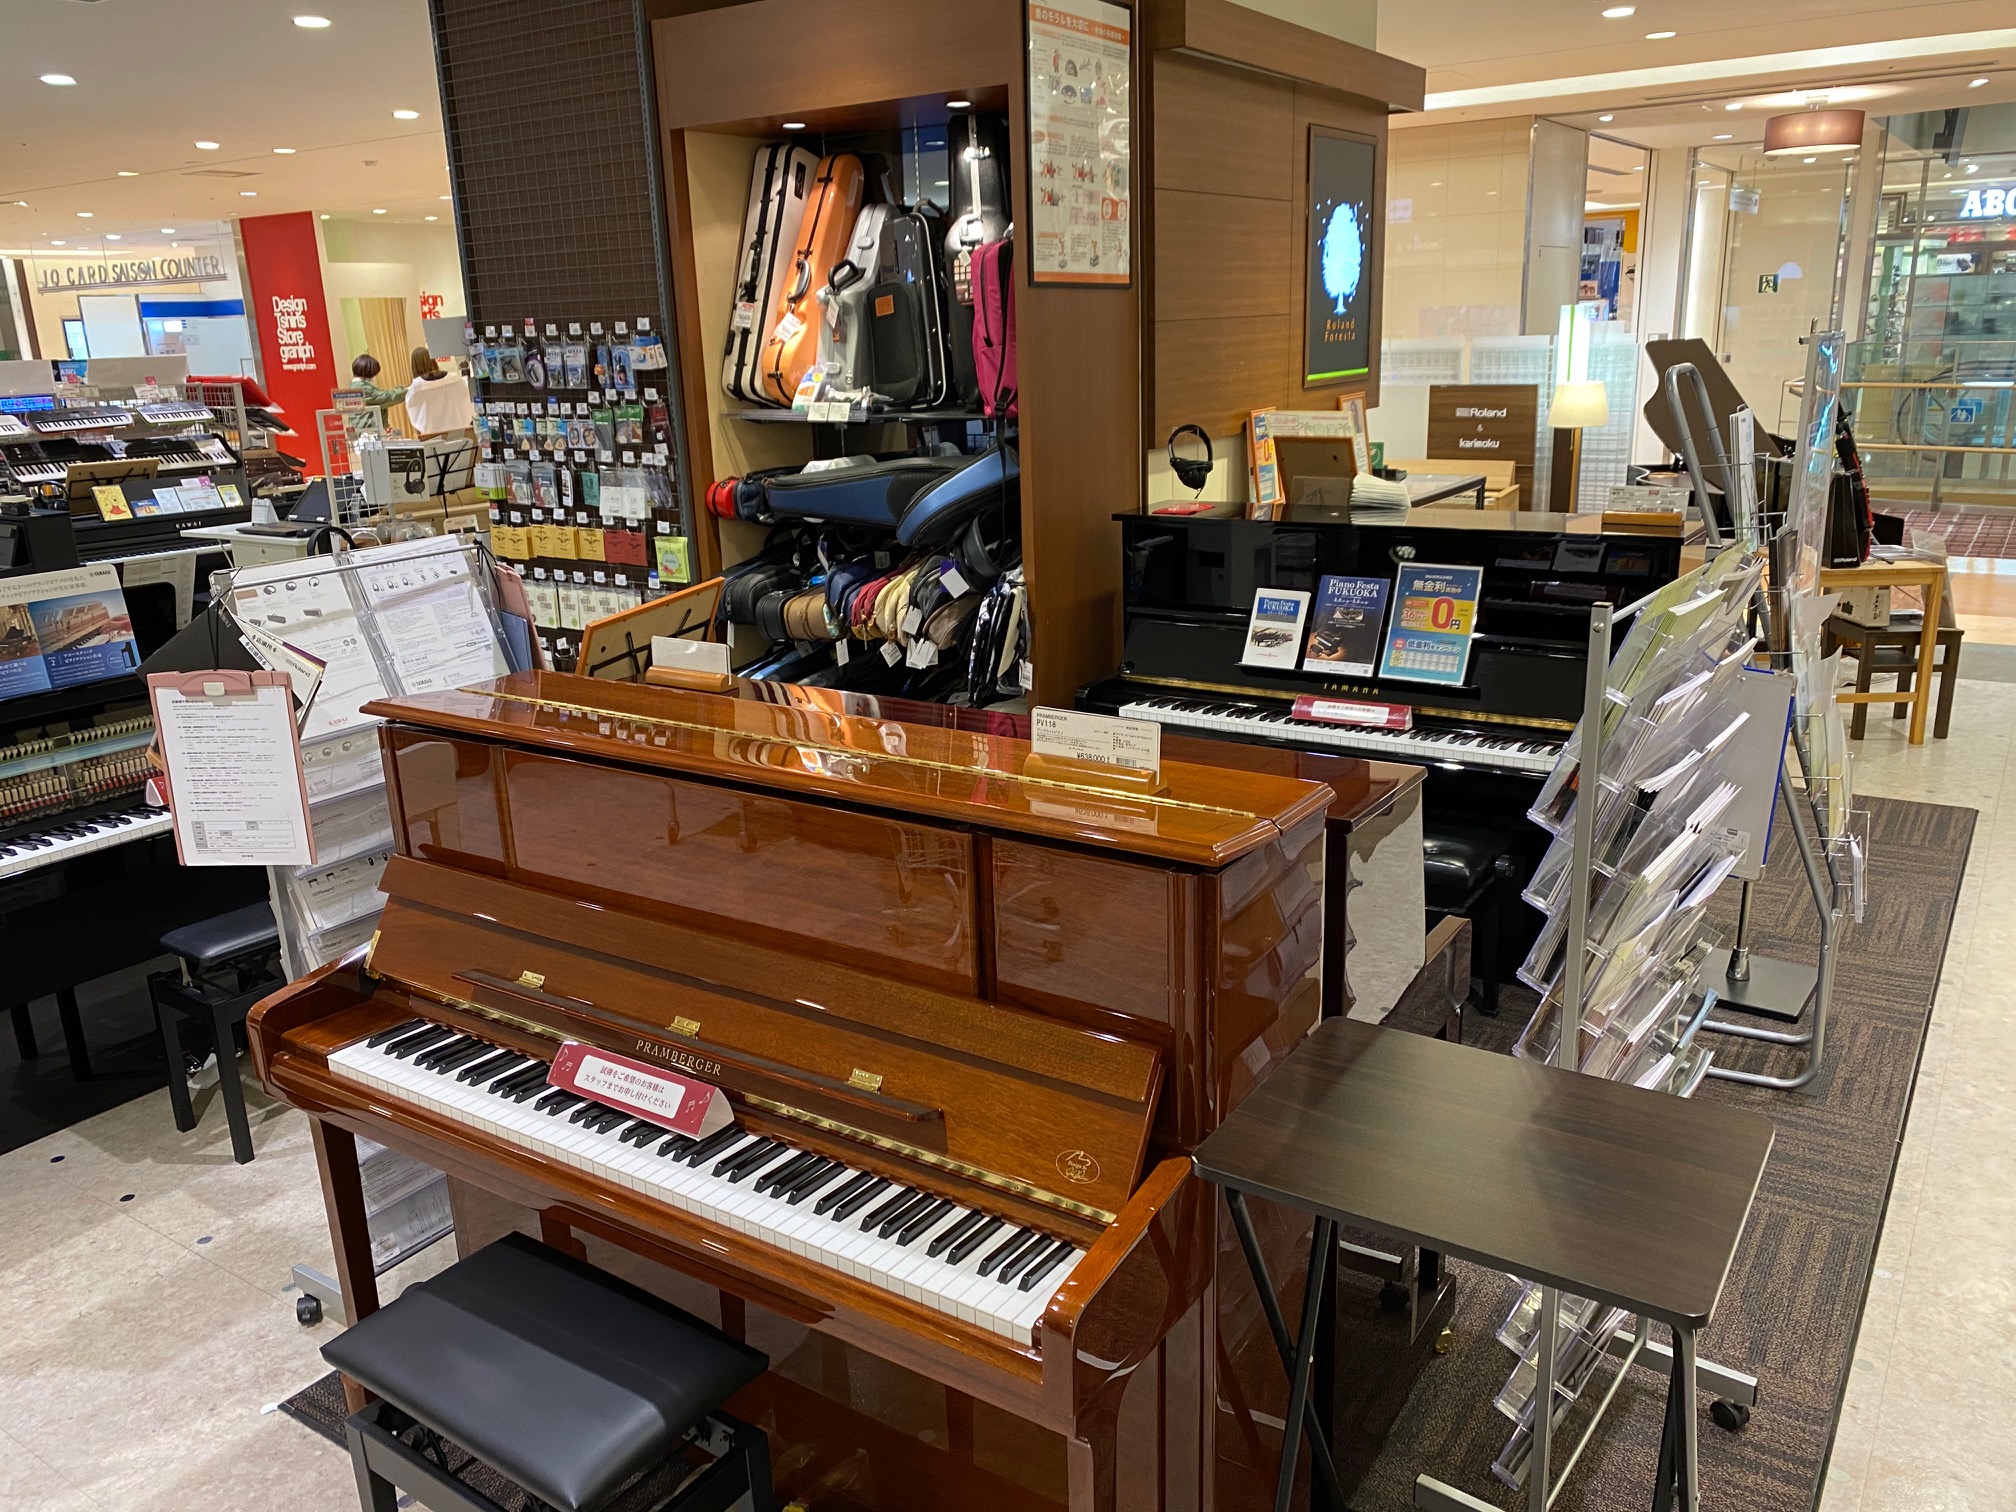 ピアノ総合ページ アコースティックピアノを買うなら島村楽器アミュプラザ博多店へ アミュプラザ博多店 店舗情報 島村楽器